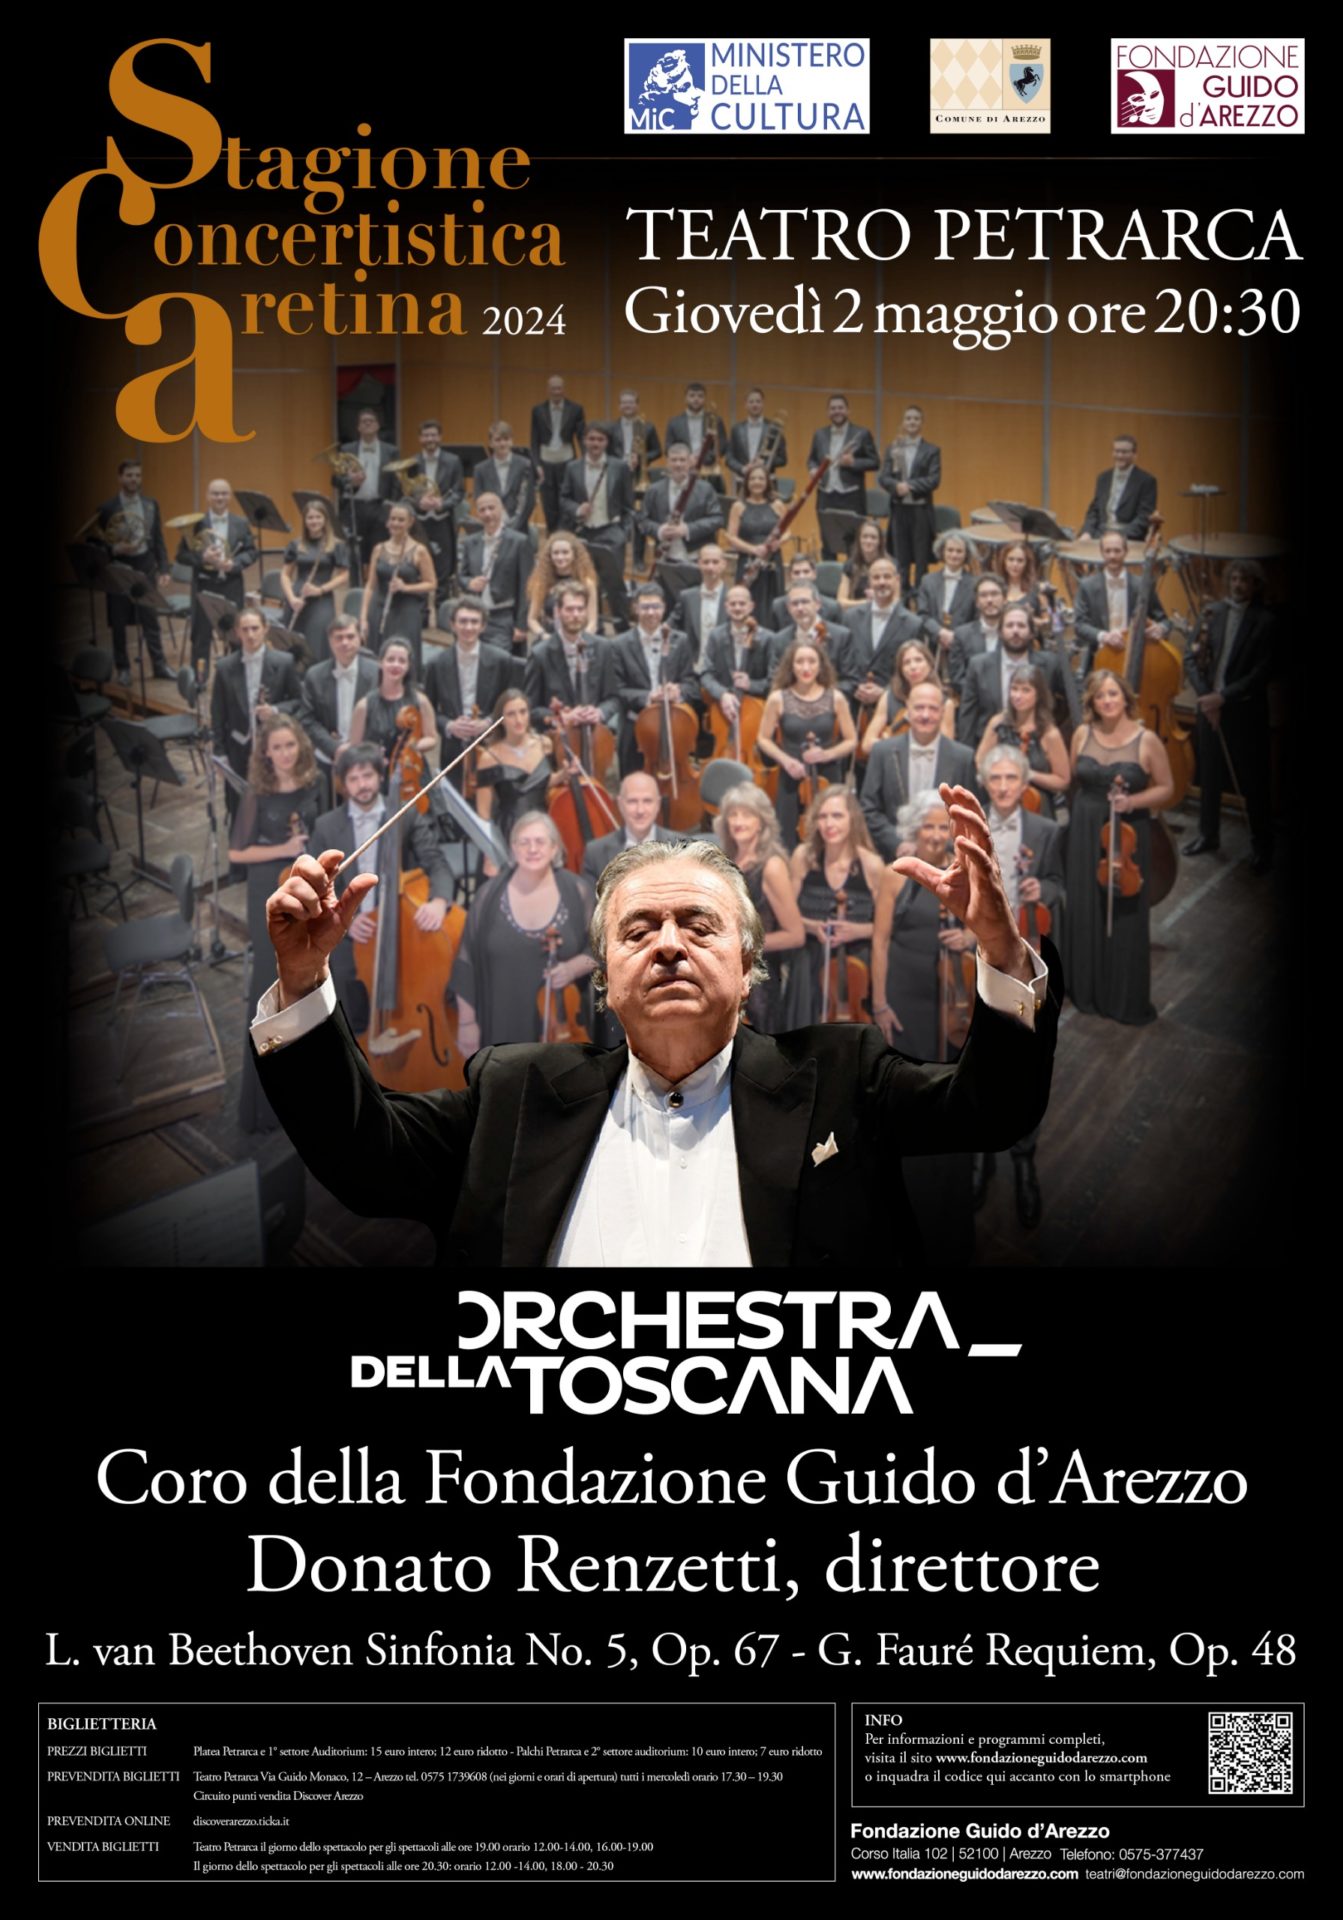 Orchestra della Toscana, Coro della Fondazione Guido d'Arezzo, diretti dal Maestro Donato Renzetti 70x100 2 maggio